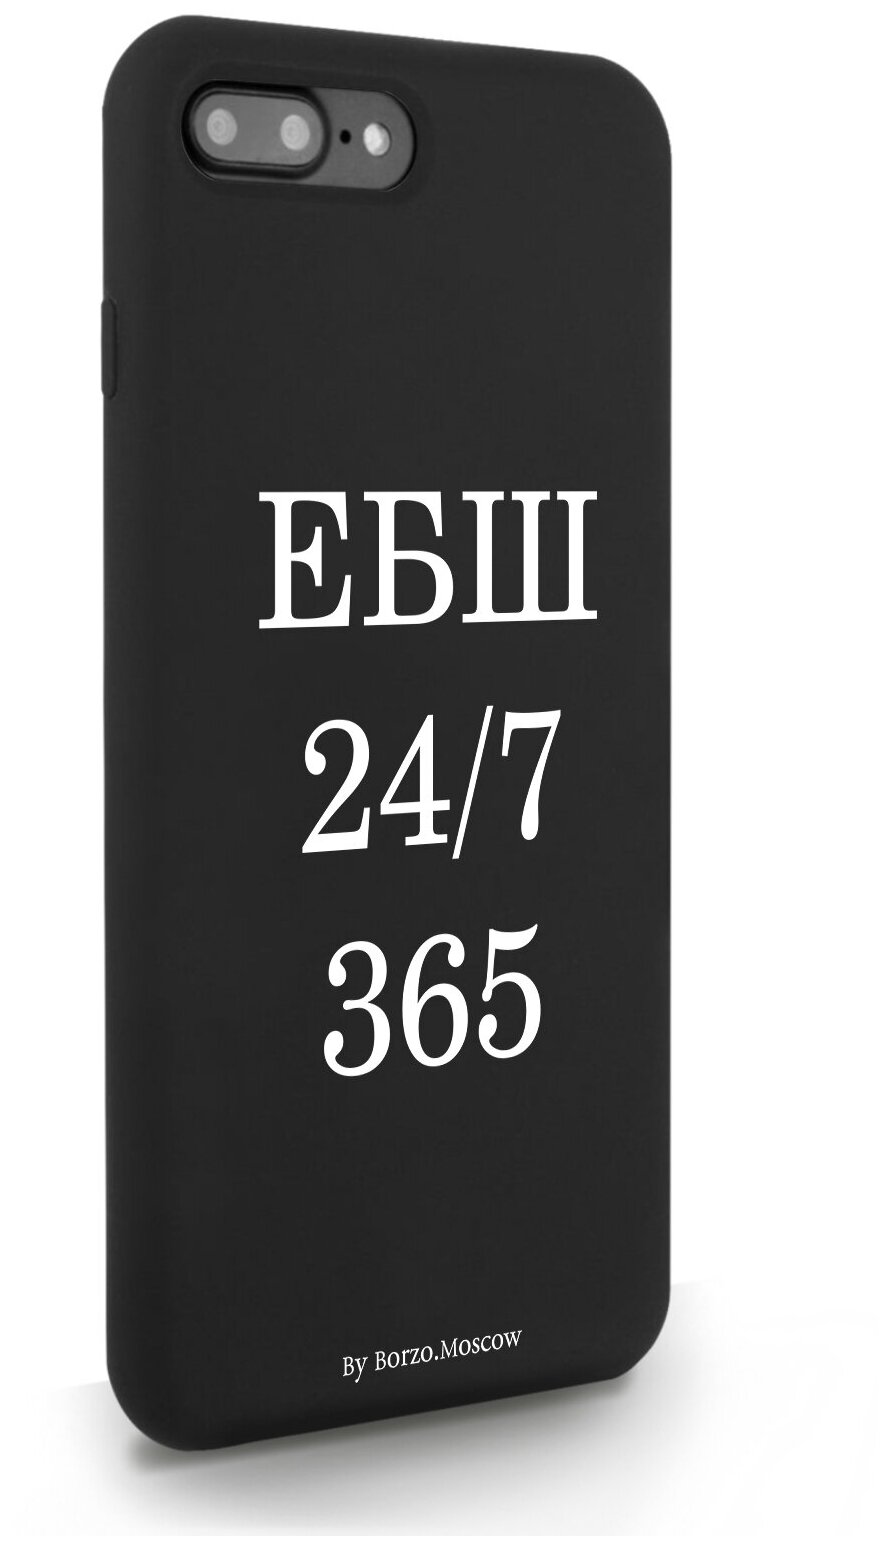 Черный силиконовый чехол Borzo.Moscow для iPhone 7/8 Plus ЕБШ 24/7/365 для Айфон 7/8 Плюс